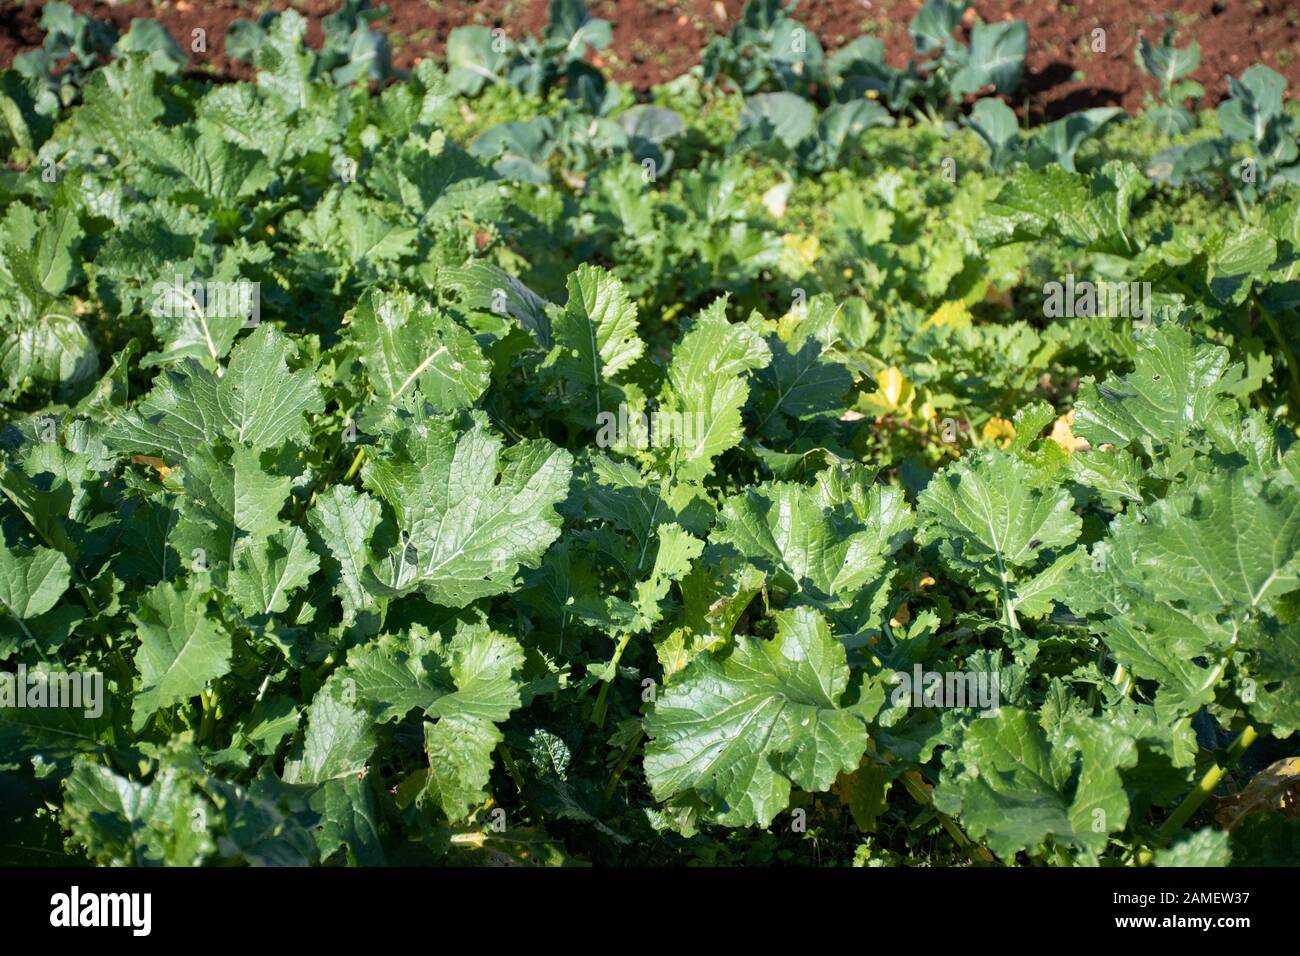 Cime di Rapa, rapini oder Brokkoli Rabe in einem Feld, grüne Gemüse aus der Familie der Kreuzblütler, veggies, mediterrane Küche Stockfoto